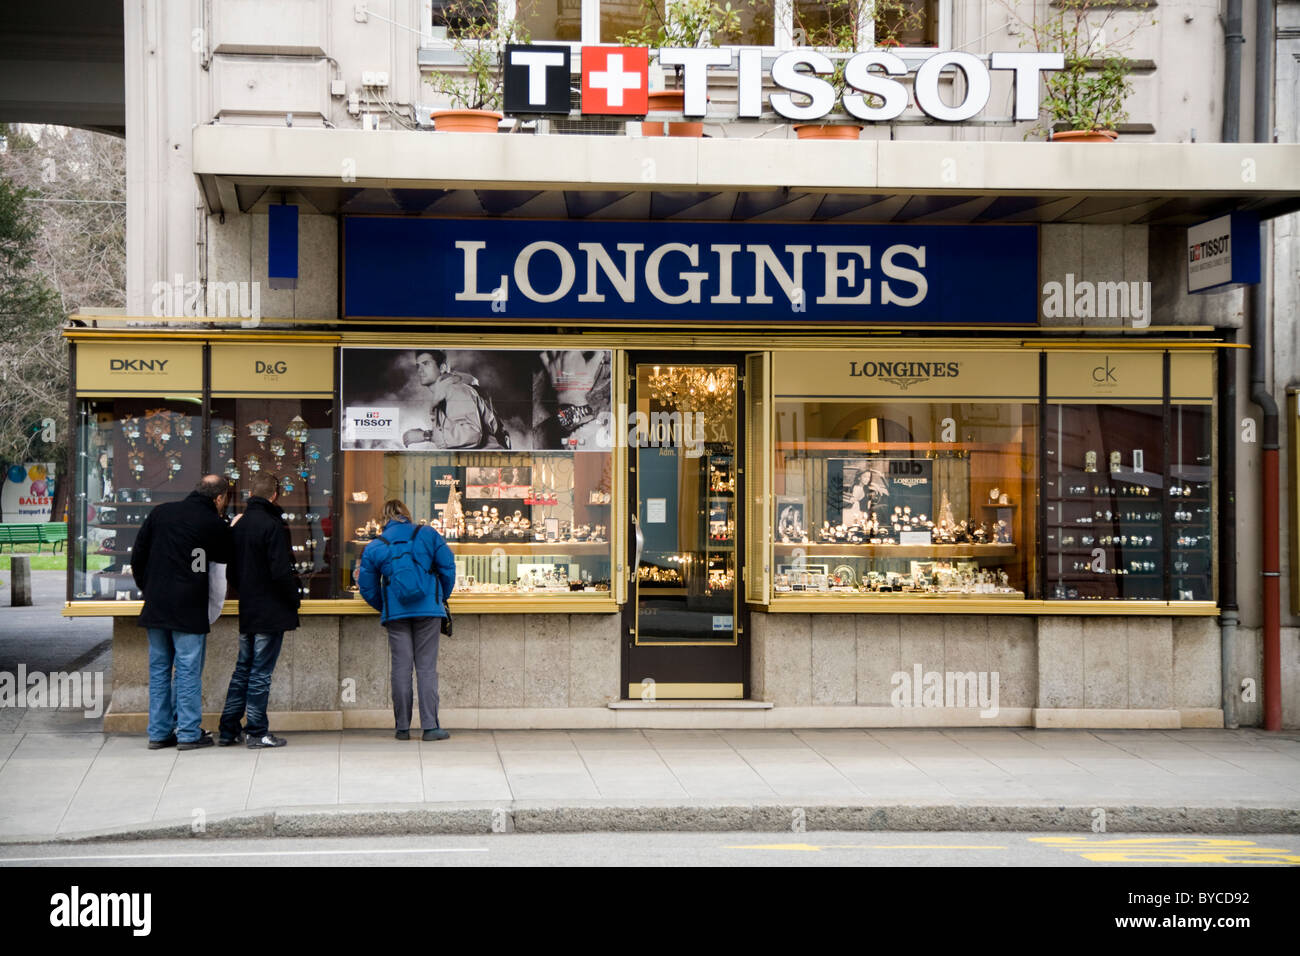 Gioielliere / Gioiellerie / store nella vendita di Ginevra Swiss made Tissot e Longines orologi da polso. Geneve. La Svizzera. Foto Stock